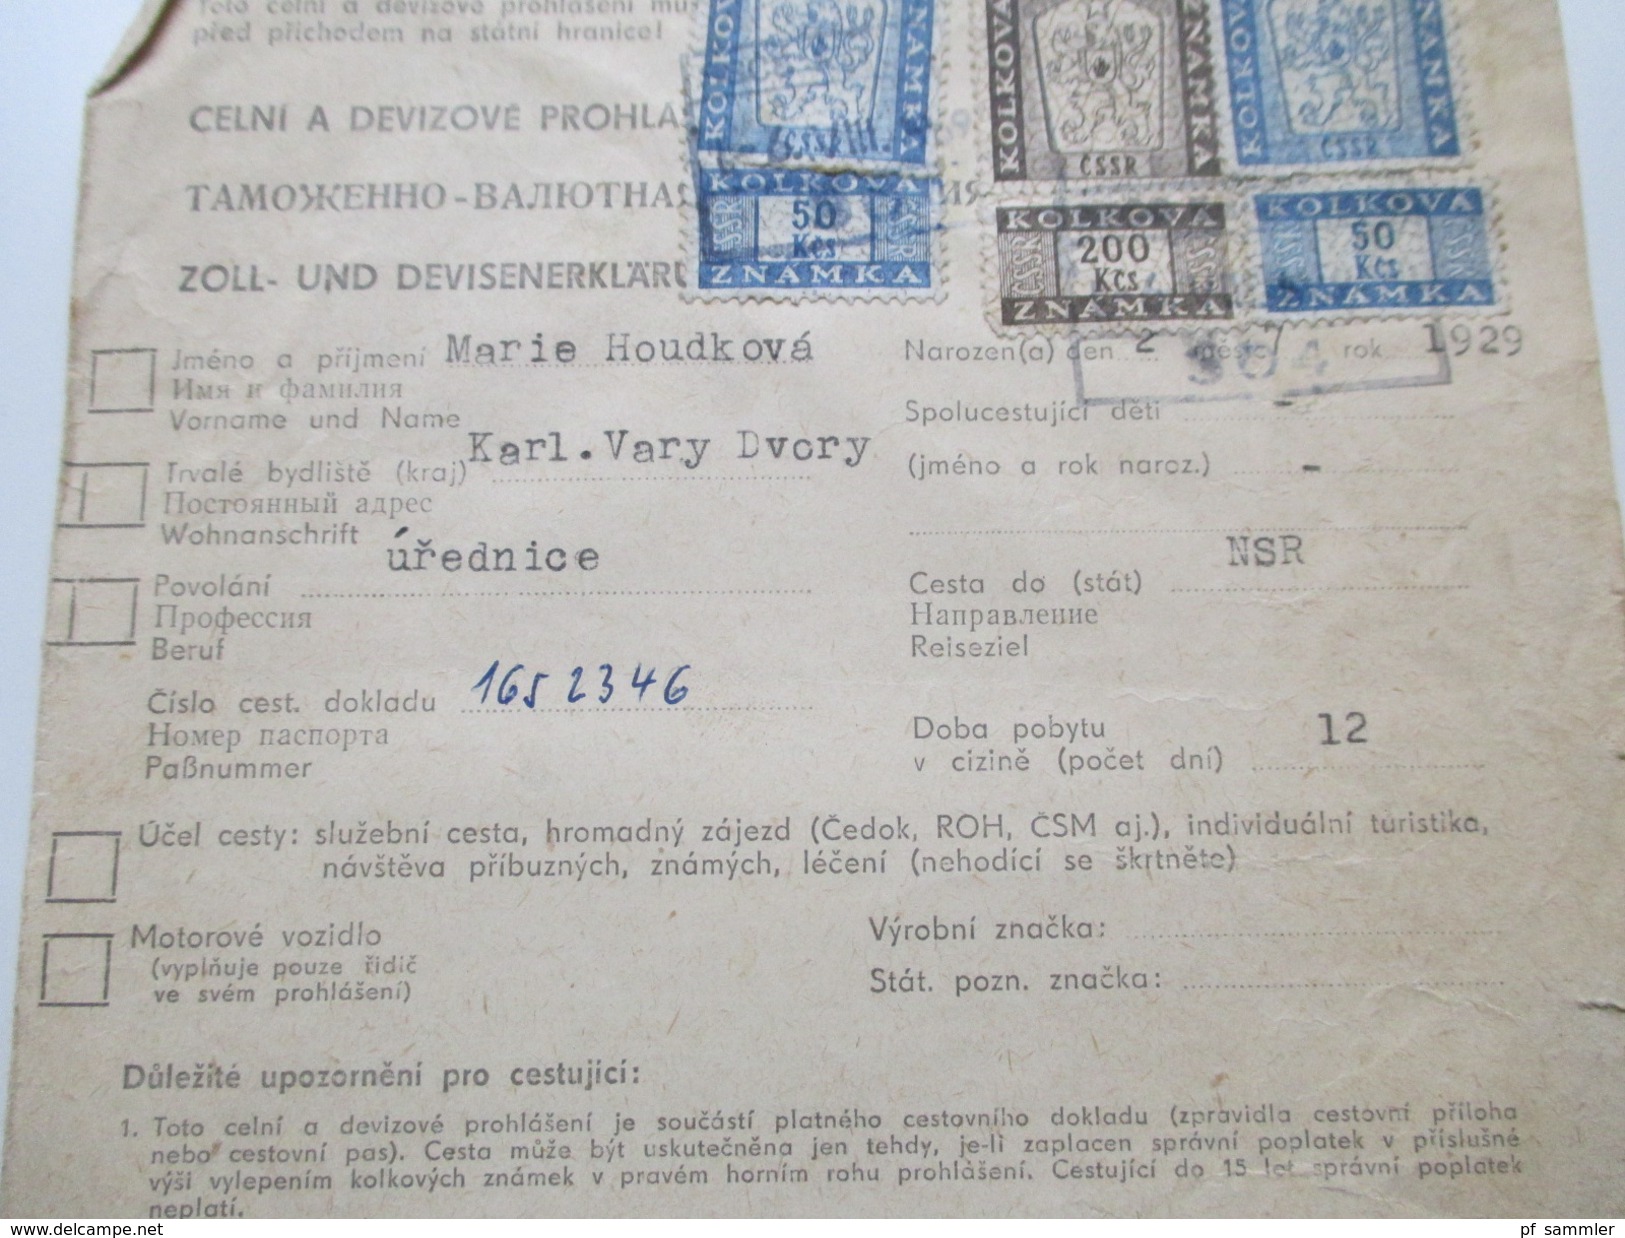 Tschechoslowakei 1951 Zoll und Devisenerklärung 3 Stück mit Fiskalmarken / Stempelmarken! Interessant??!!